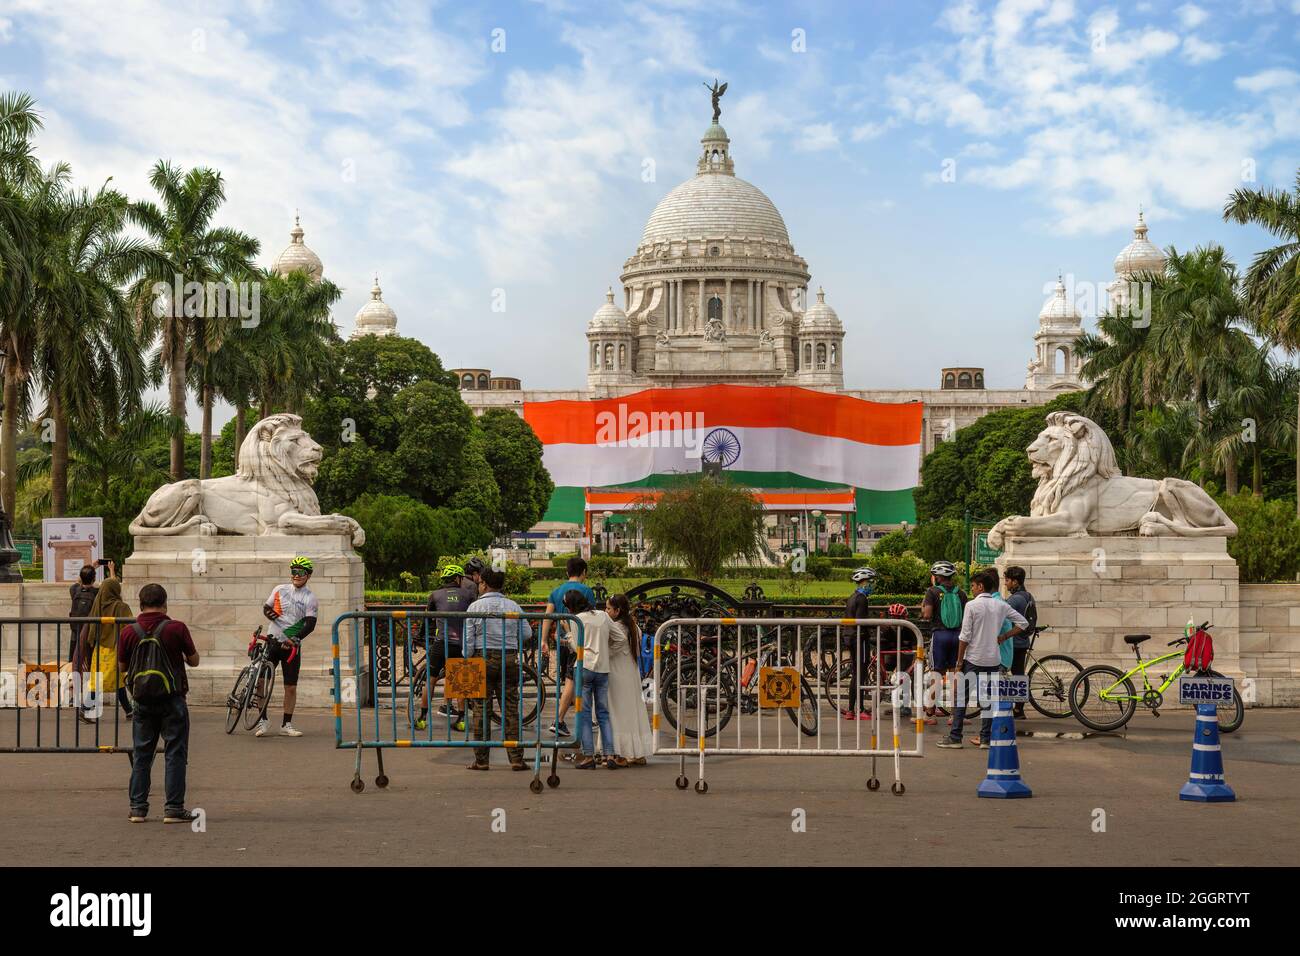 Das Victoria Memorial Denkmal in Kalkutta ist anlässlich des Unabhängigkeitstages mit einer indischen Nationalflagge geschmückt Stockfoto